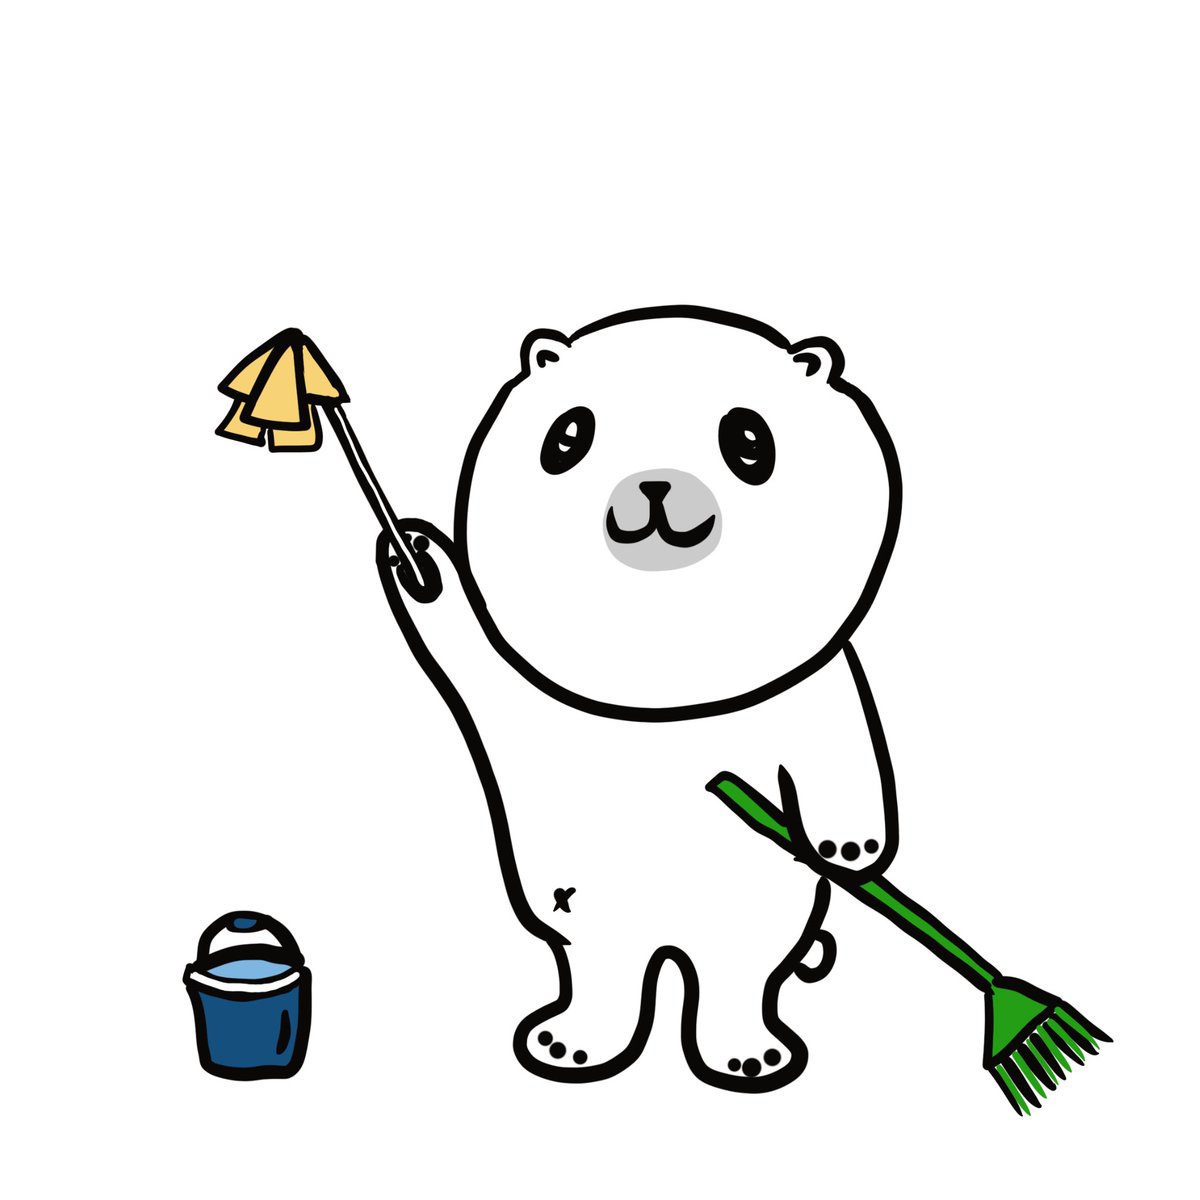 大掃除の大晦日です🐻‍❄️🧹 今年も一年ありがとうございました🐻‍❄️ 良いお年をお迎えください🐻‍❄️ #しろくまゴロー #大晦日 #大掃除 #良いお年を #しろくま #シロクマ #polarbear #artwork #illustration #drawing #イラスト #ゆるイラスト